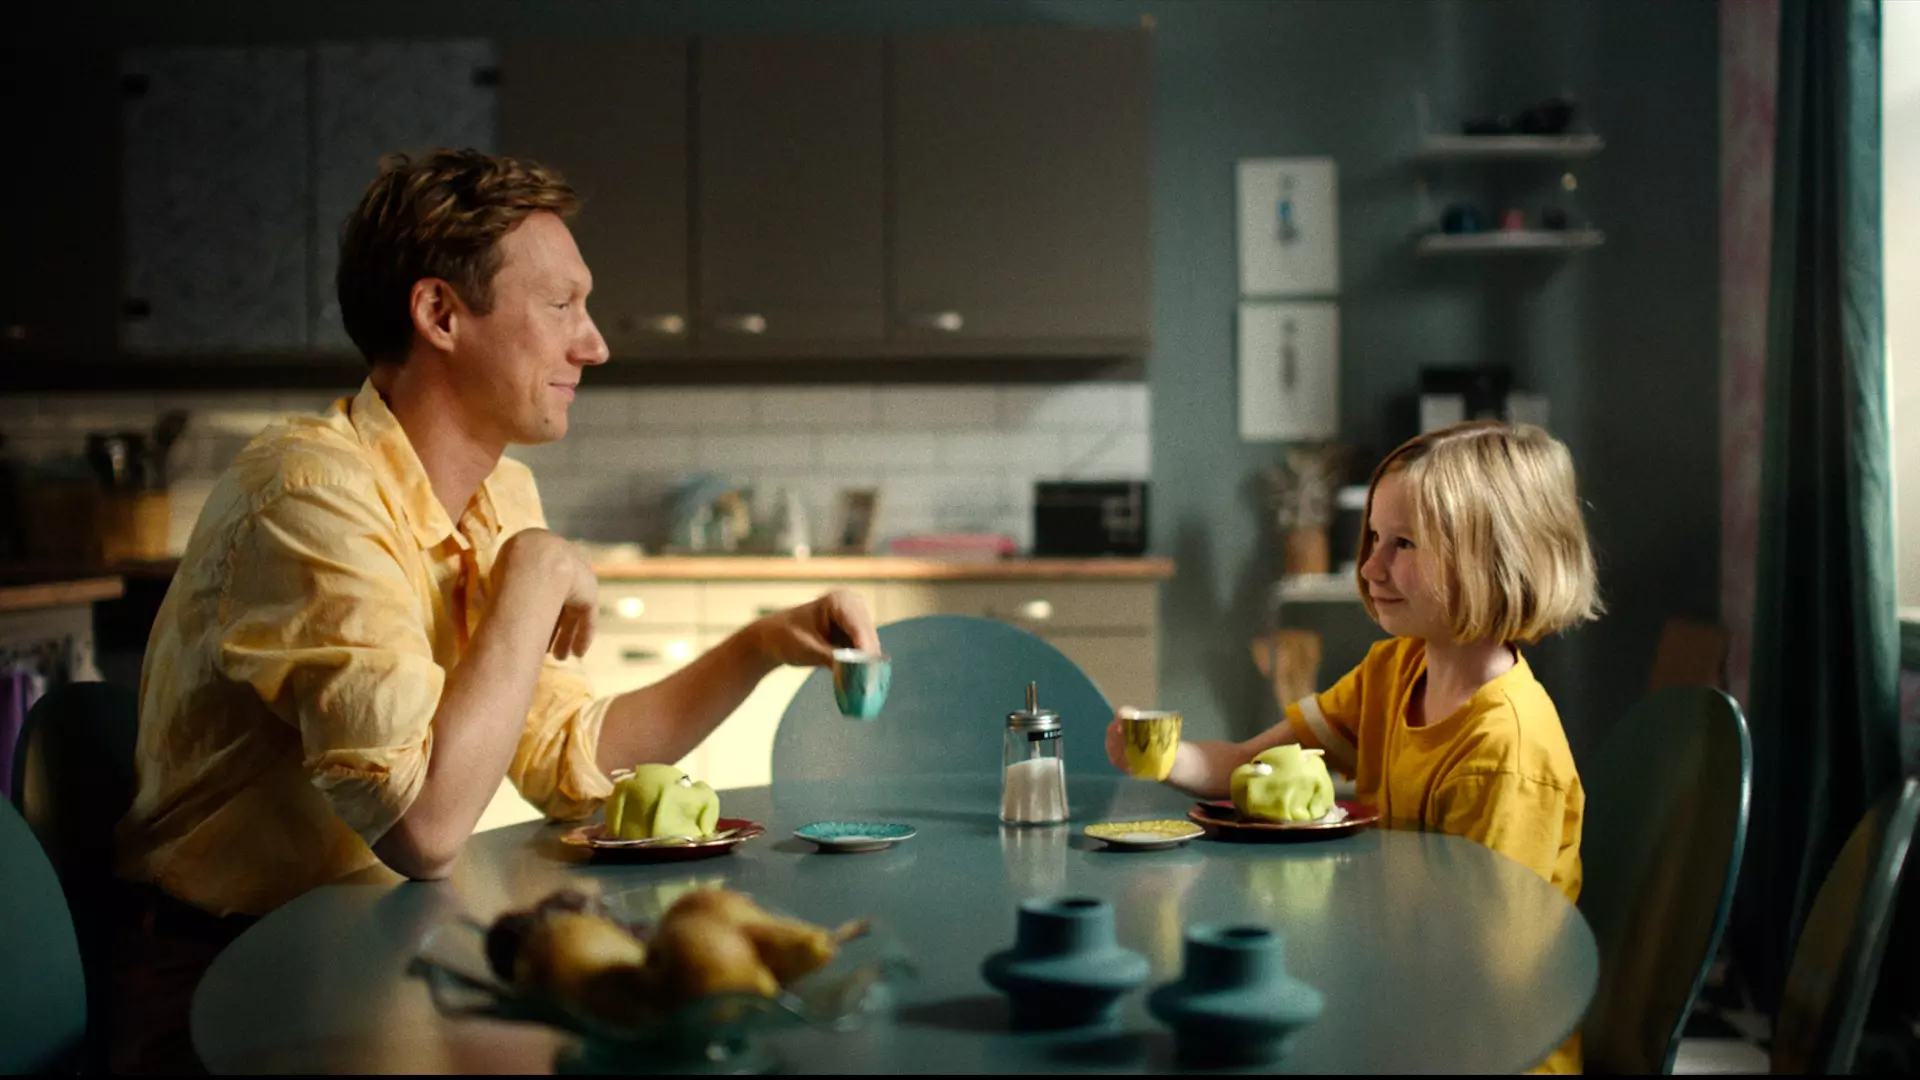 En mann og en jente sitter ved frokostbordet med kjøkkenet i bakgrunnen. Begge har på seg gult. Det ser ut som de har det gøy. 